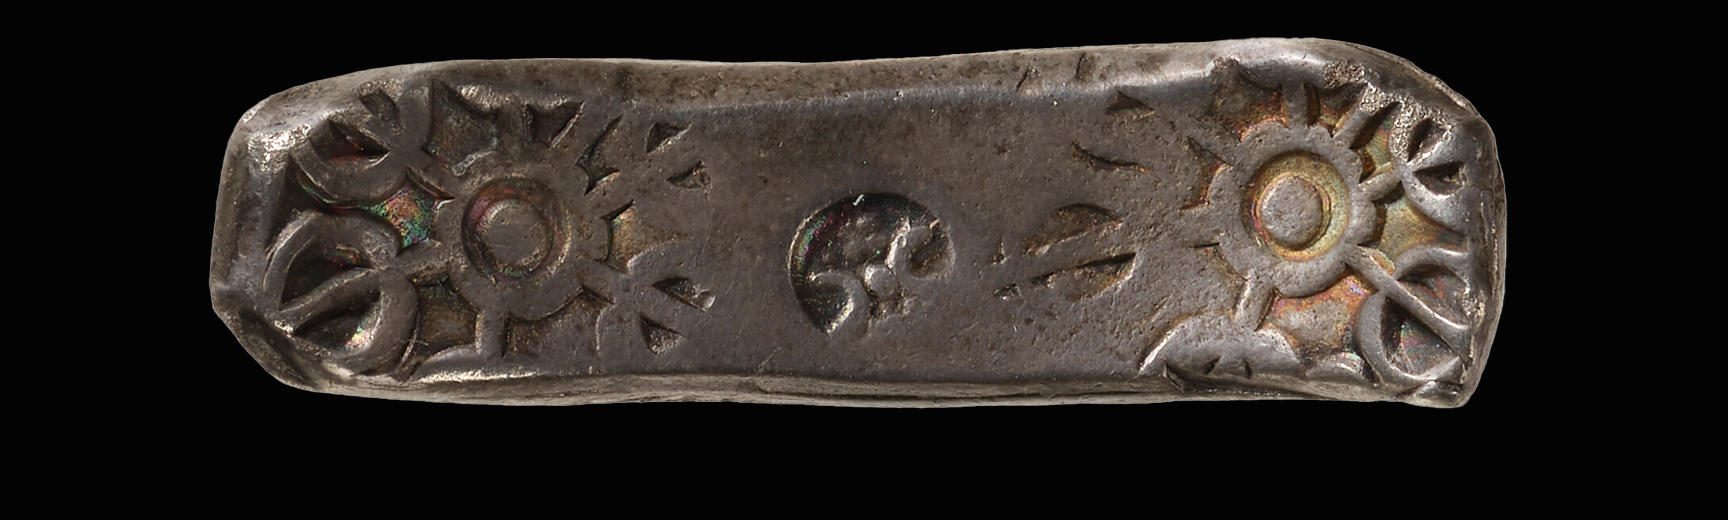 4th century BCE Persian ‘bent bar’ coin